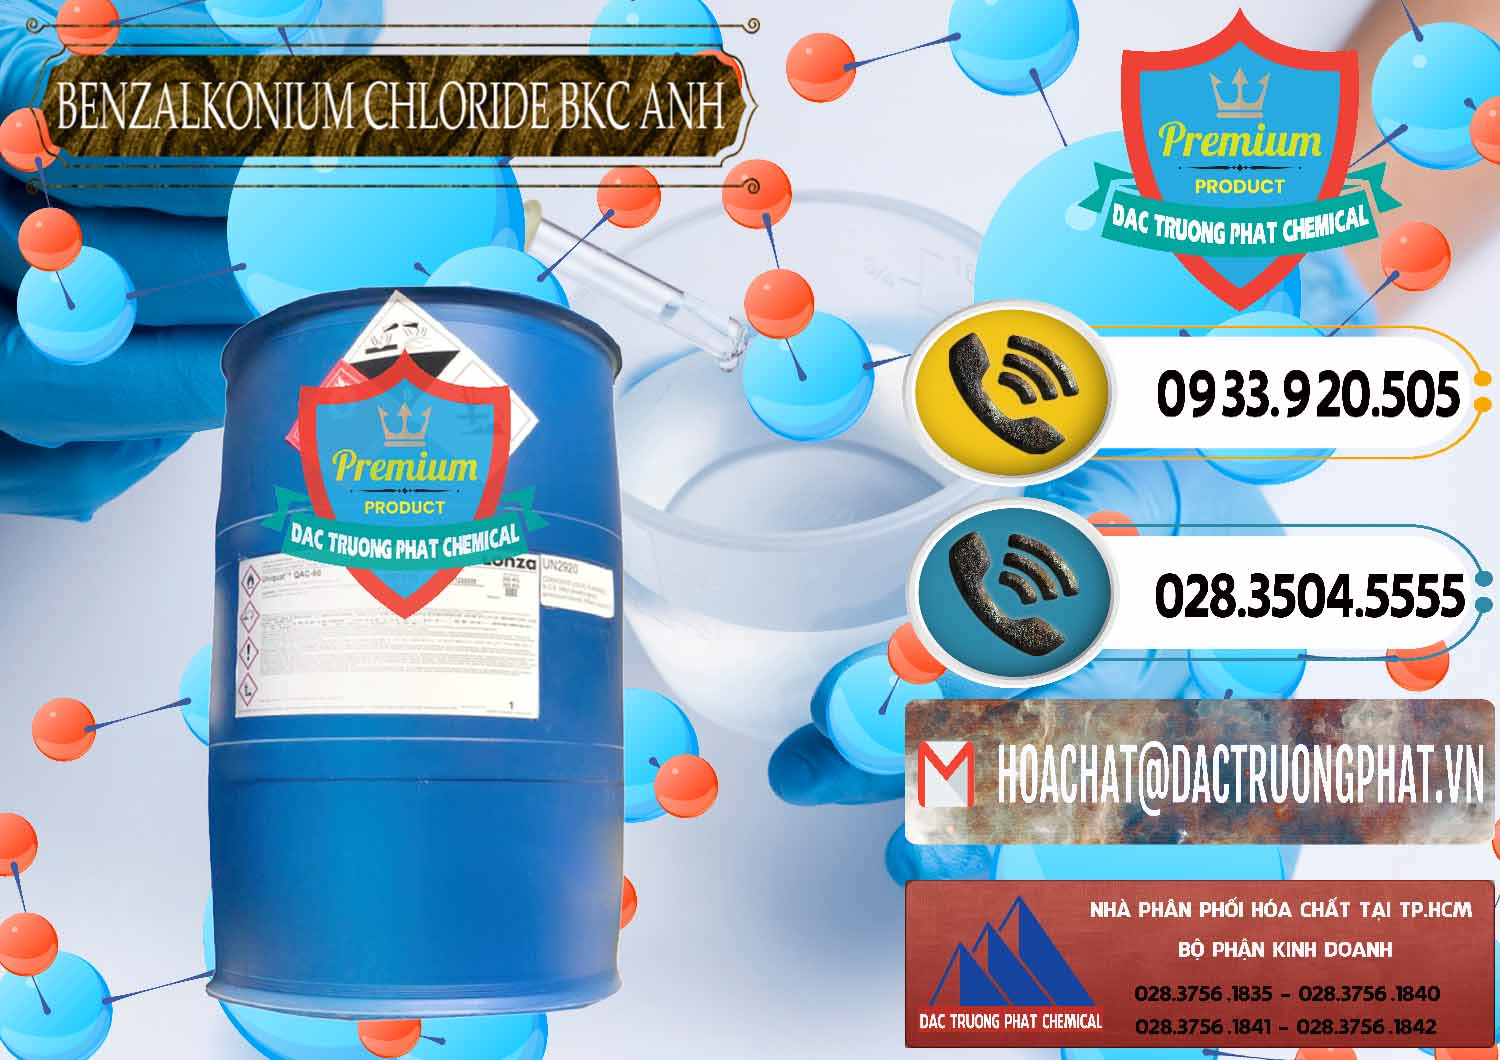 Nơi chuyên phân phối ( bán ) BKC - Benzalkonium Chloride 80% Anh Quốc Uk Kingdoms - 0457 - Nhà nhập khẩu và phân phối hóa chất tại TP.HCM - hoachatdetnhuom.vn